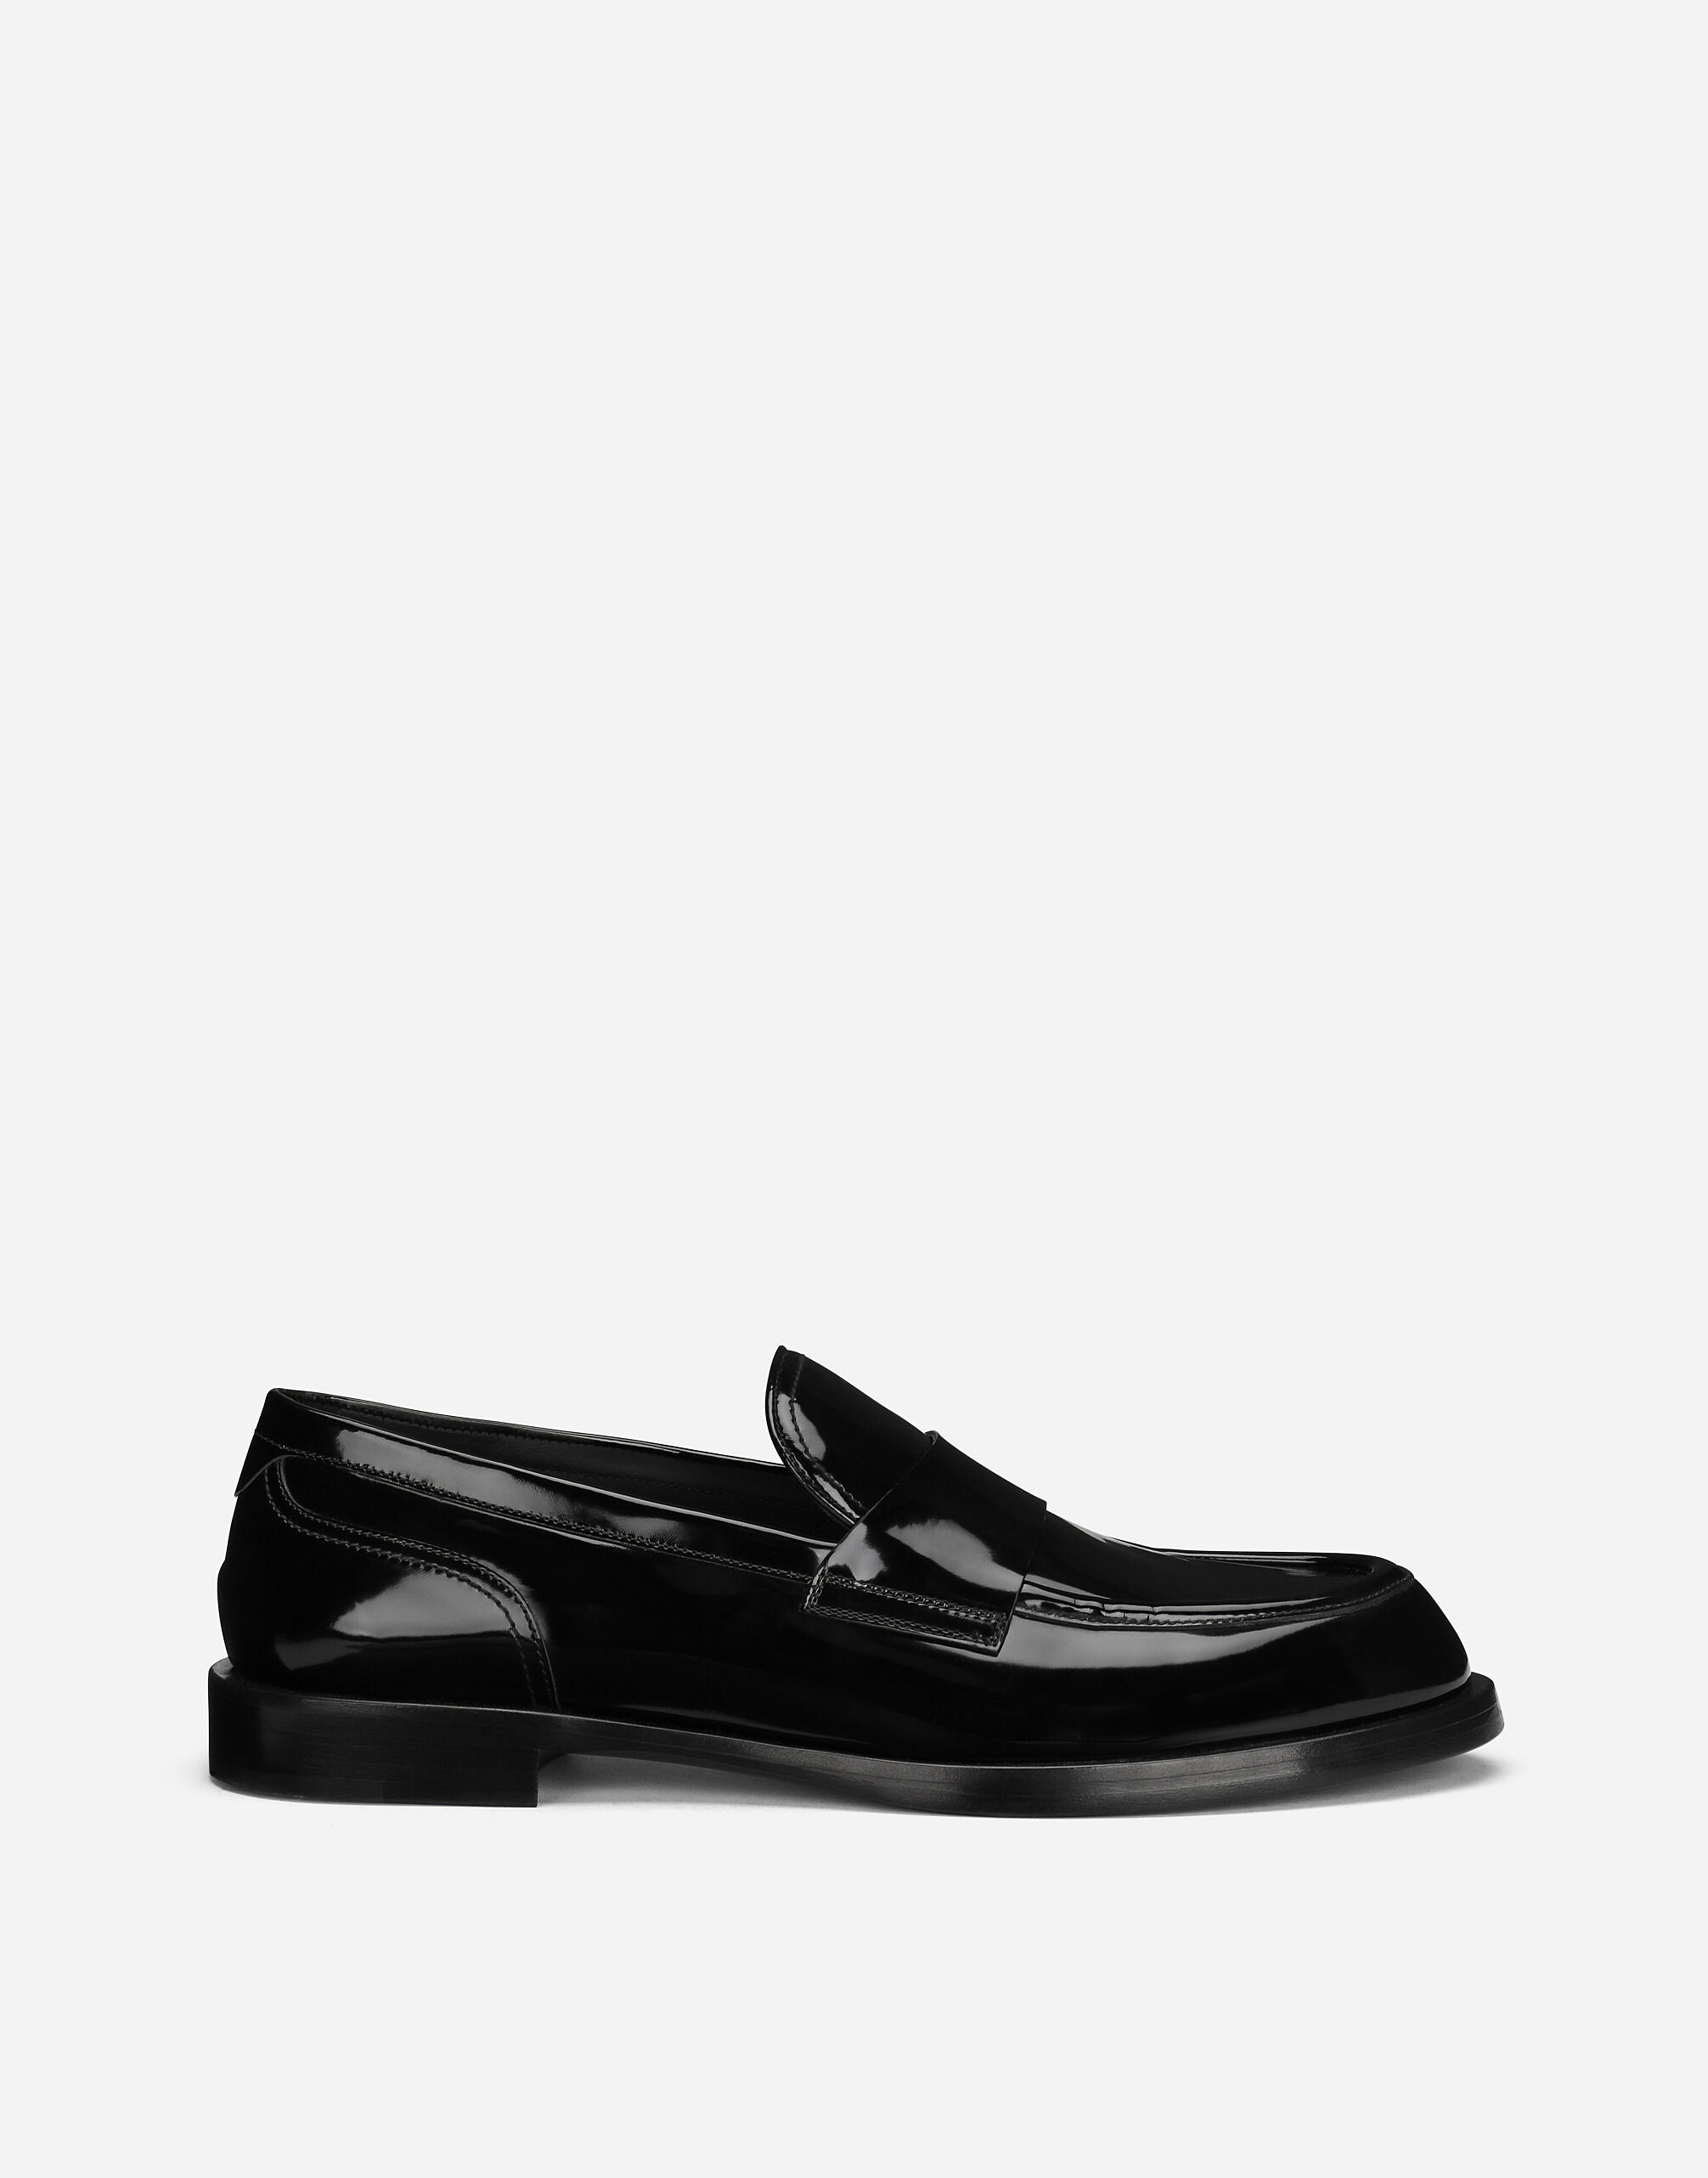 Dolce & Gabbana Polished calfskin loafers Black G2RR4TFLSIM